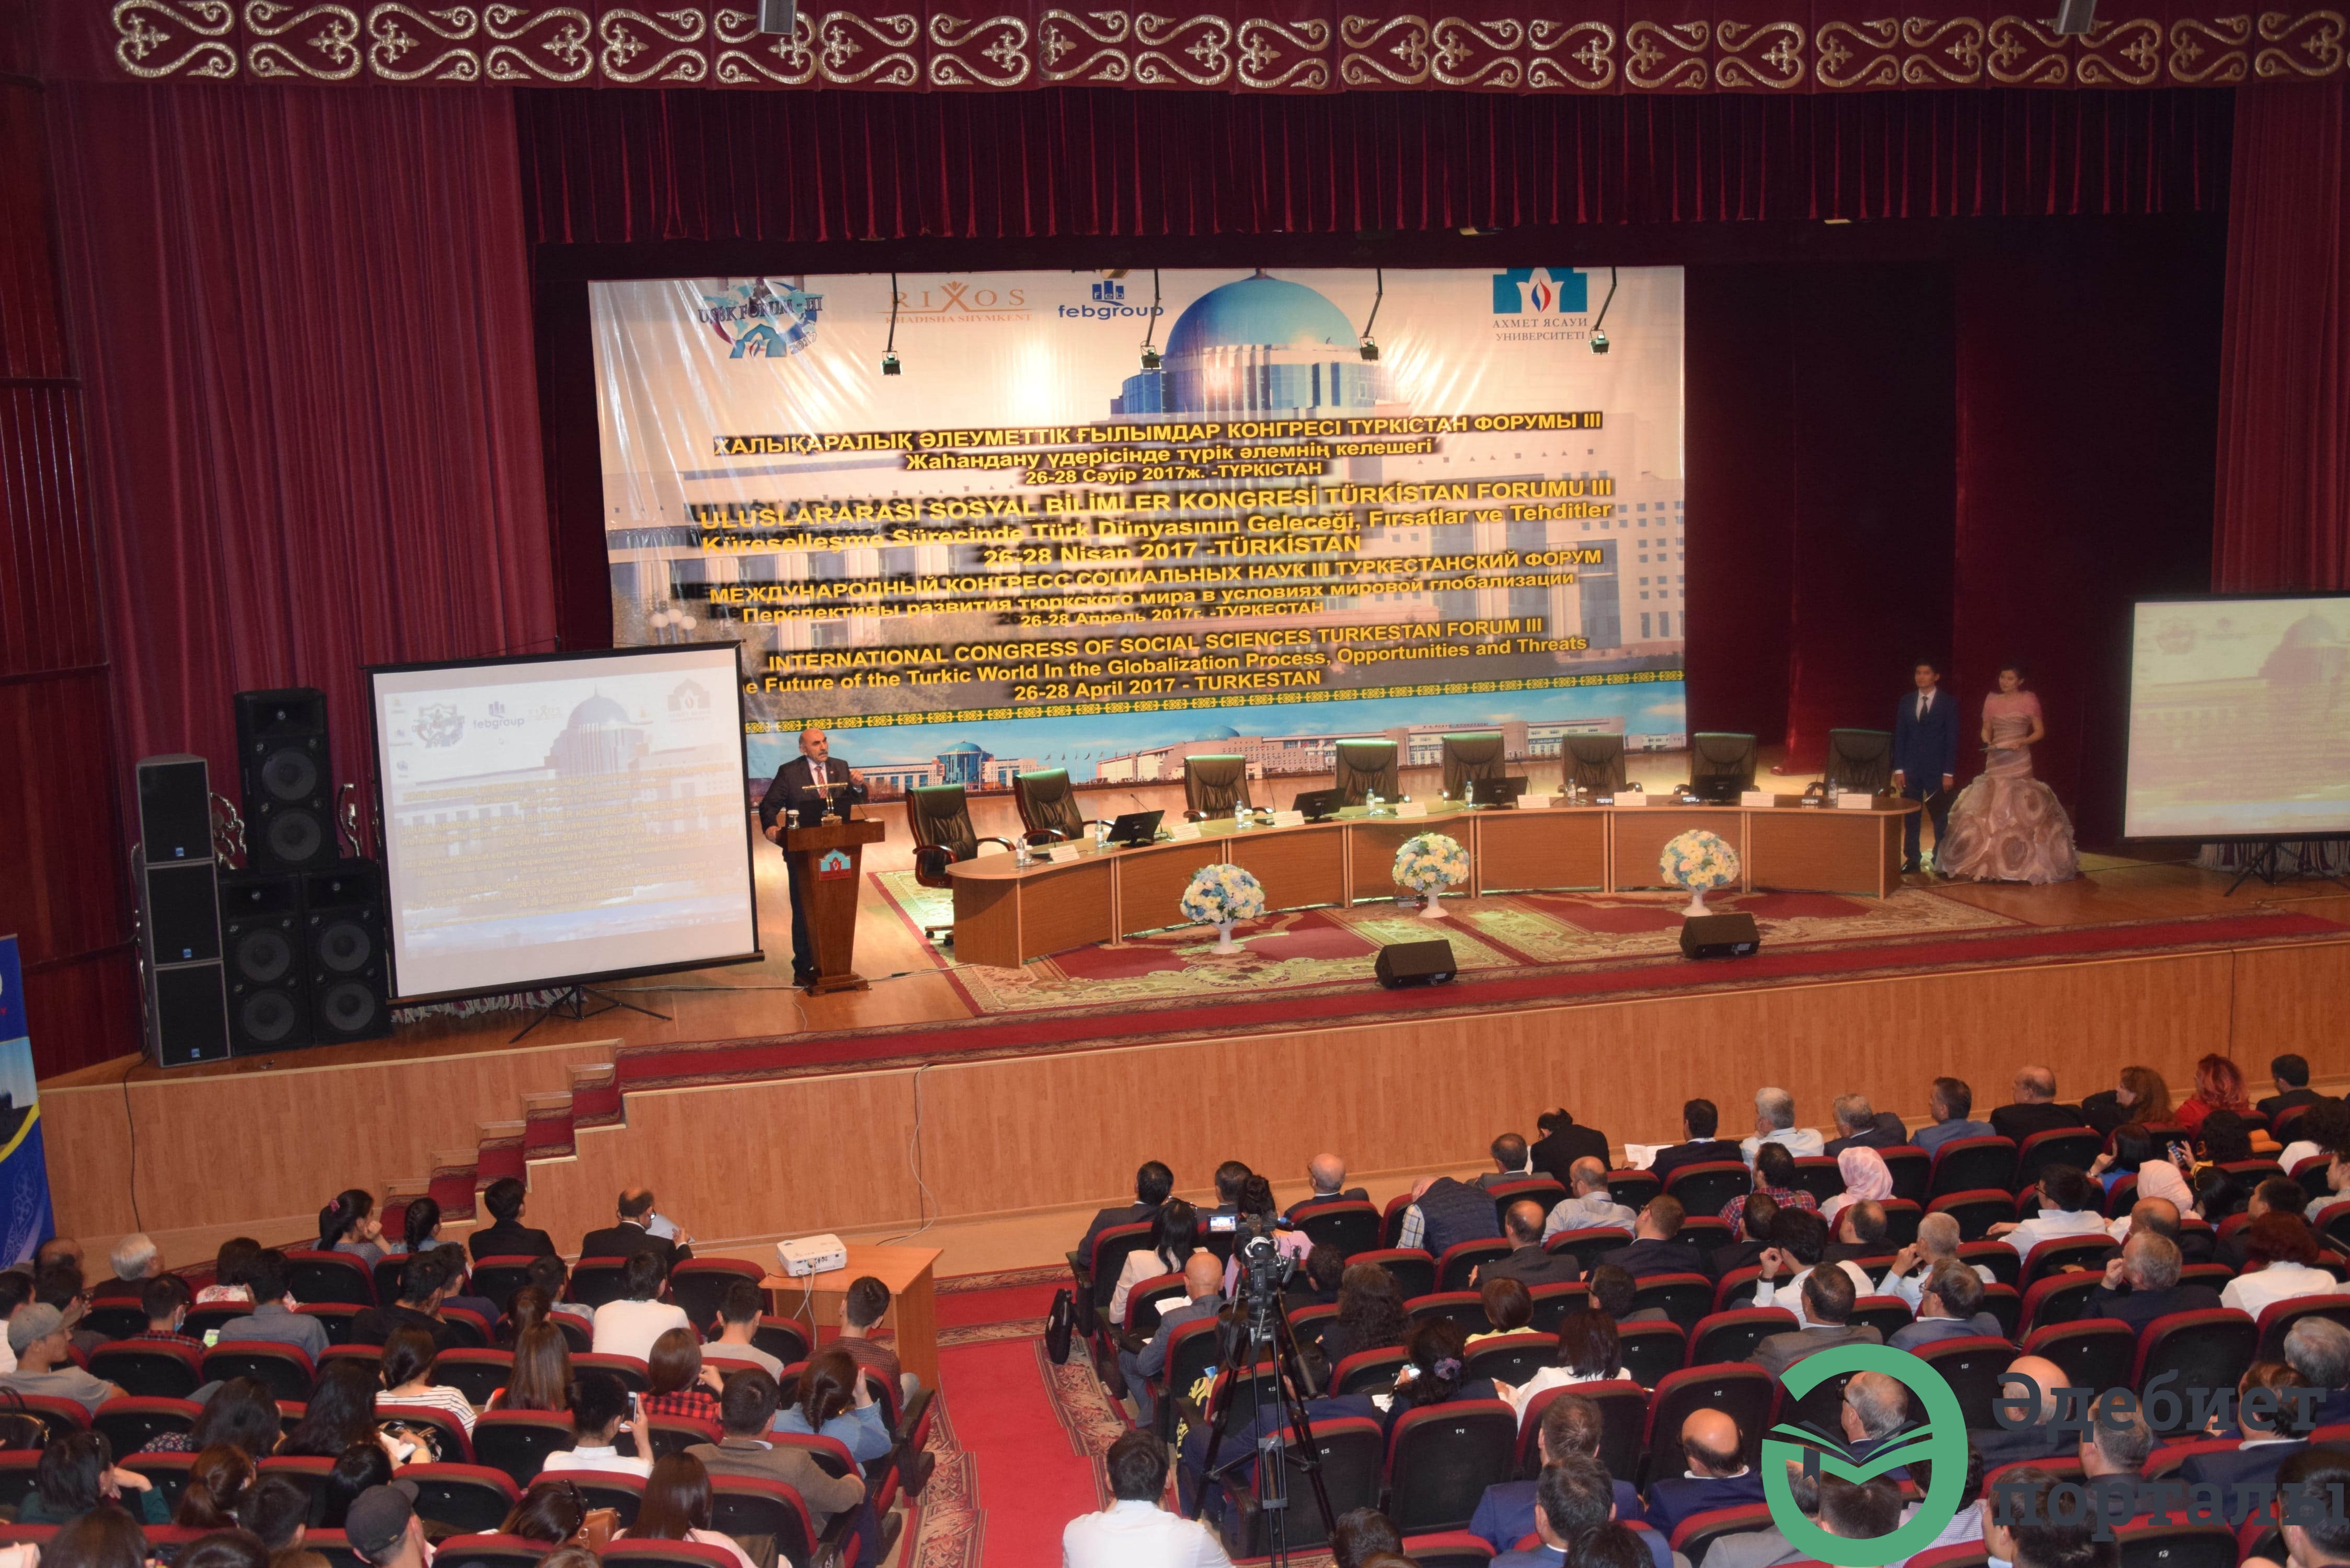 Халықаралық әлеуметтік ғылымдар конгресі: ІІІ Түркістан форумы  - фото 88 - adebiportal.kz